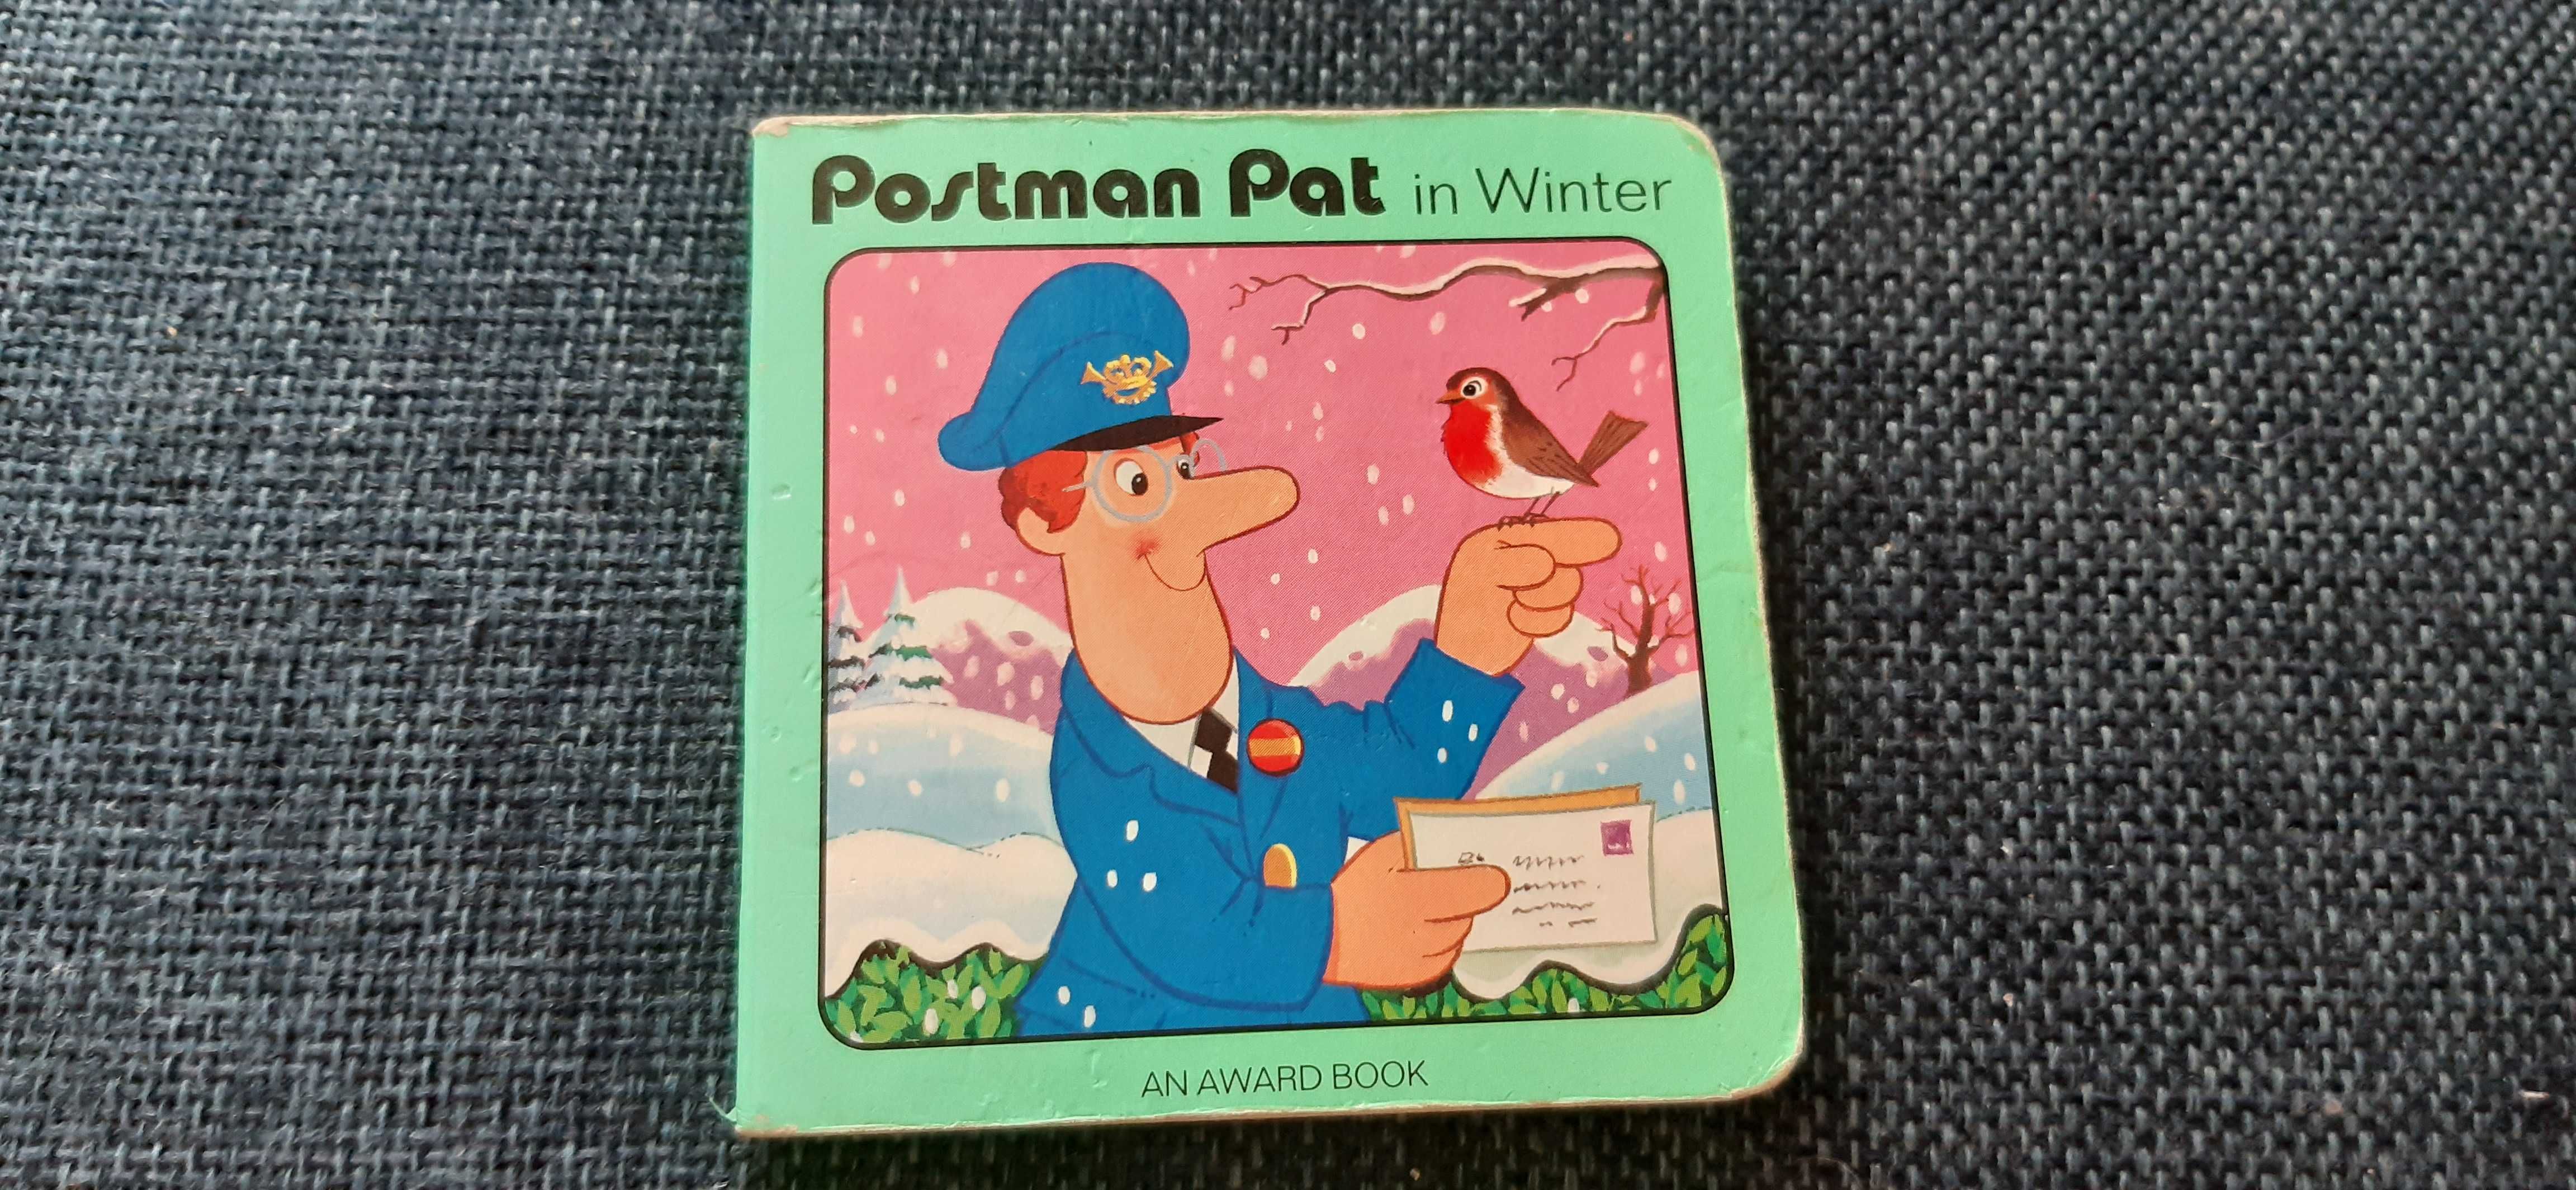 stara książeczka angielska dla dzieci postman pat in winter